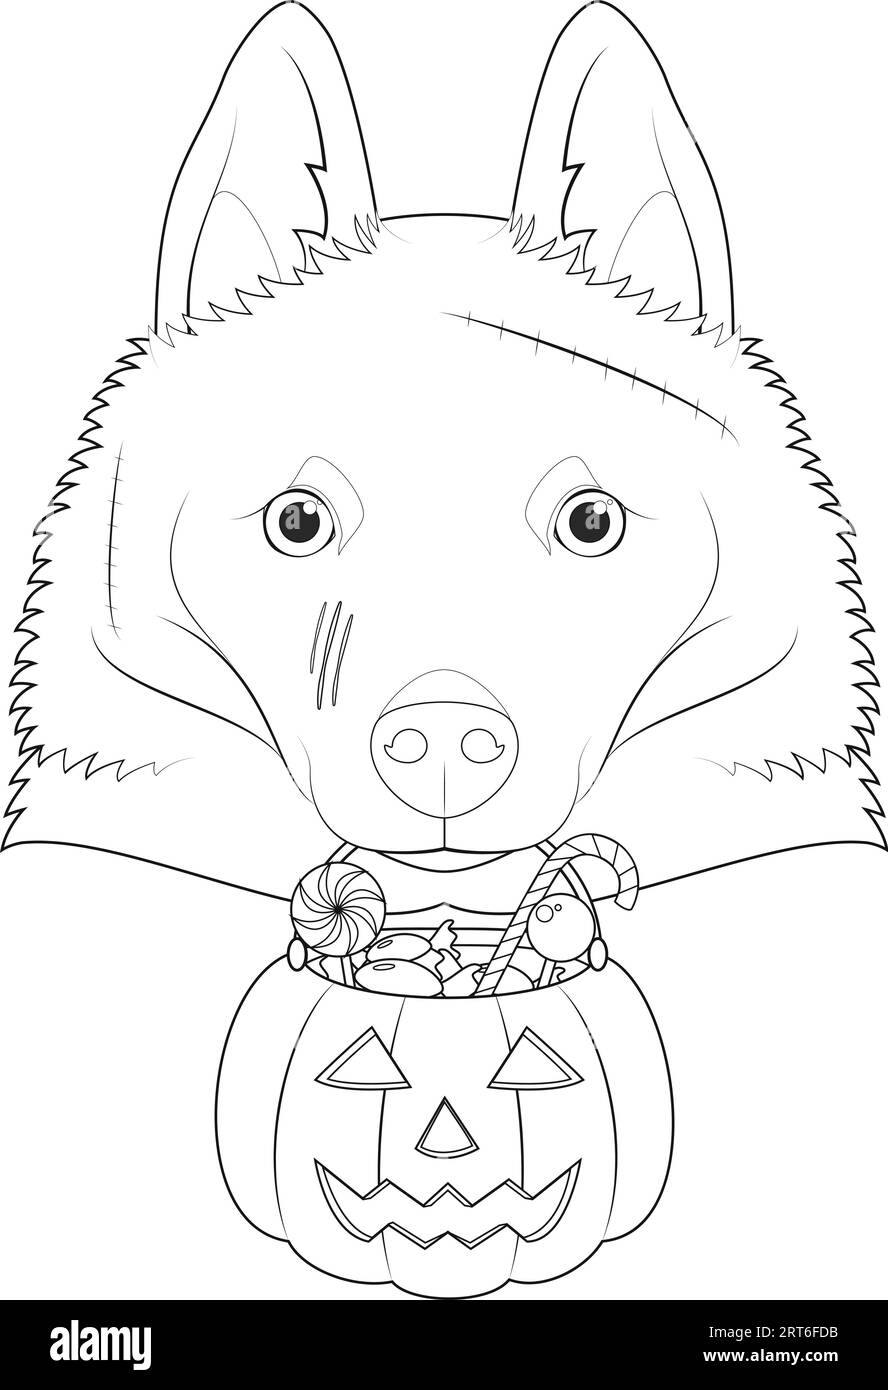 Tarjeta de felicitaciãn de halloween para colorear perro schipperke con varias cicatric en la cara y una calabaza con caramelos en la boca imagen vector de stock